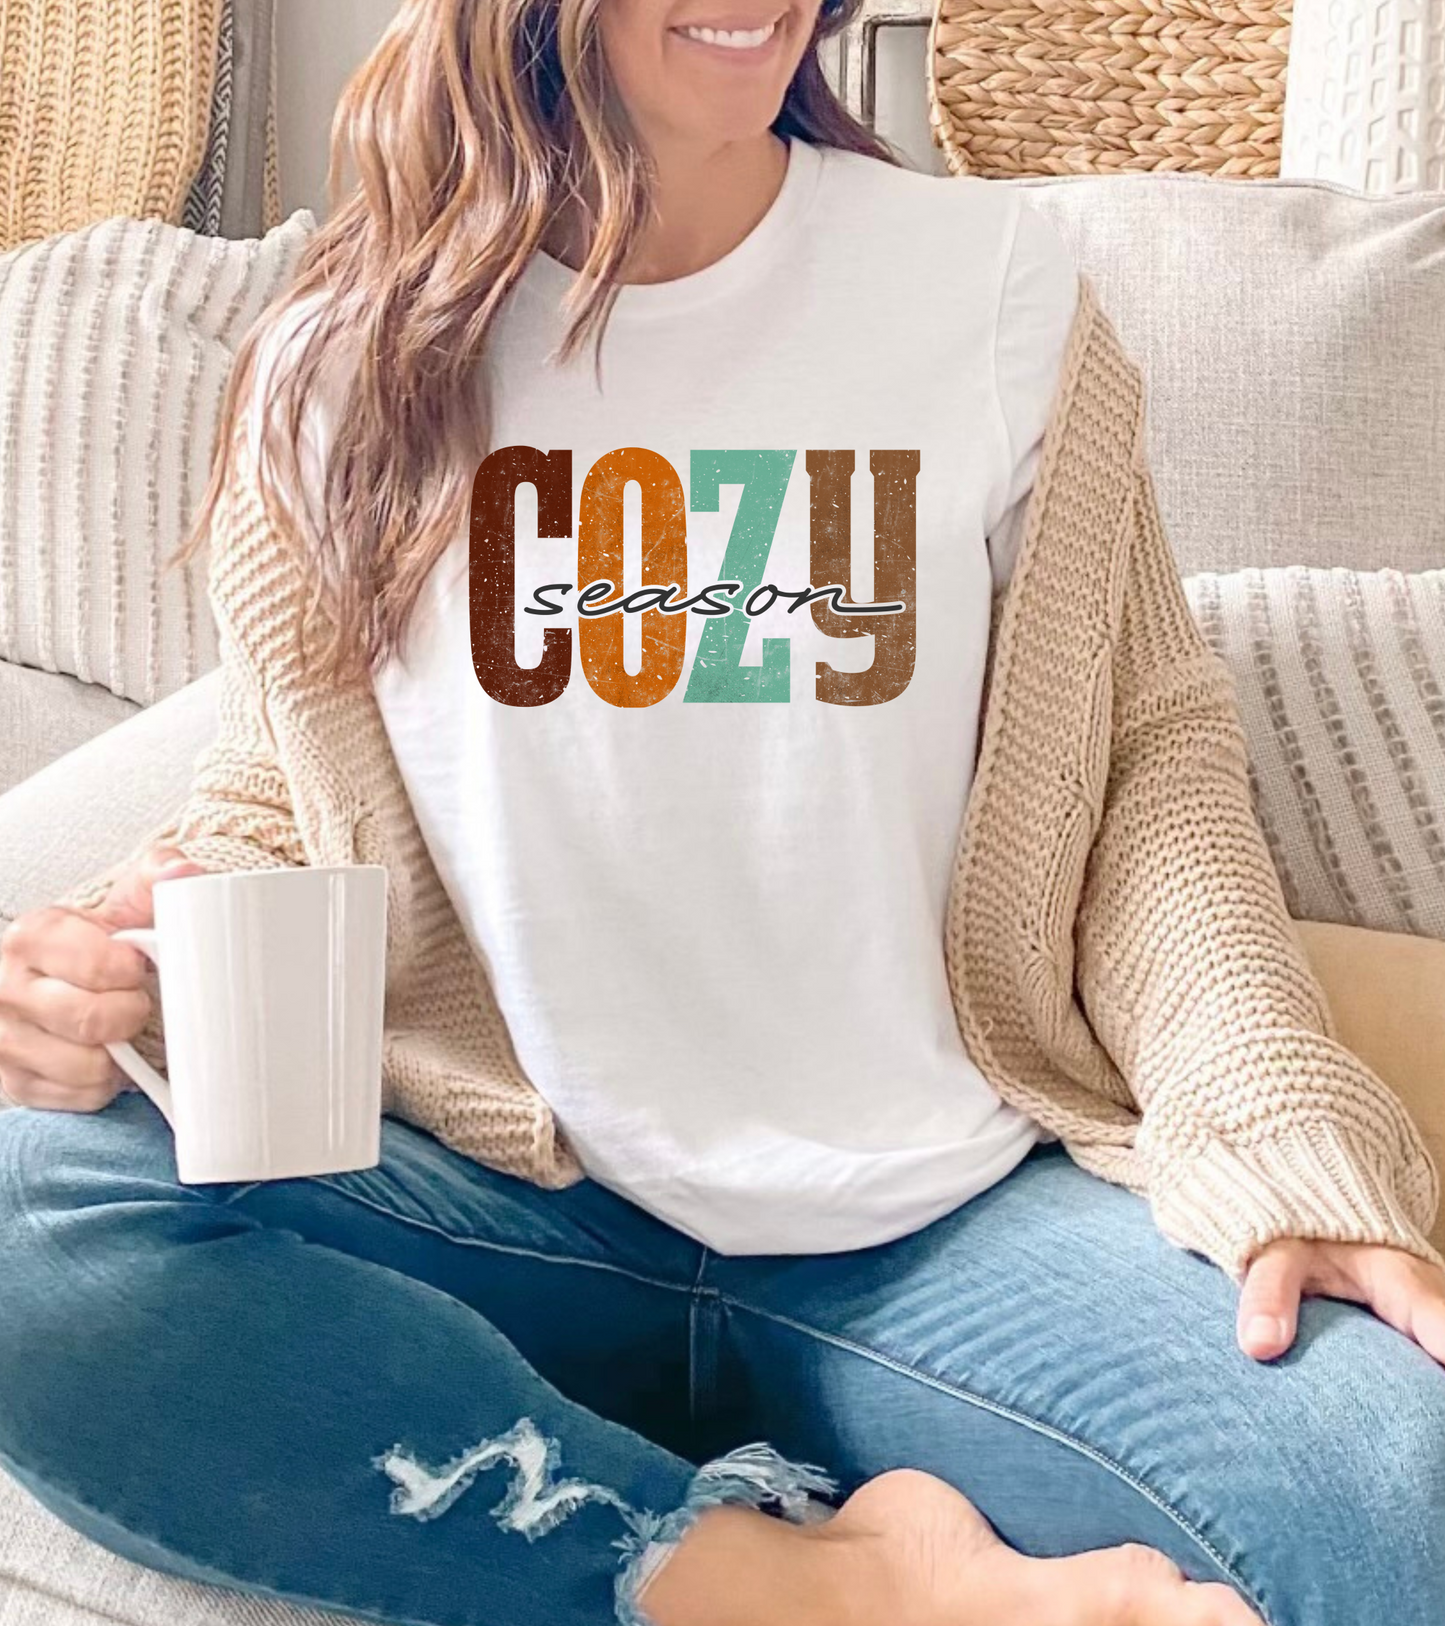 COZY SEASON (BELLA CANVAS T-Shirt)